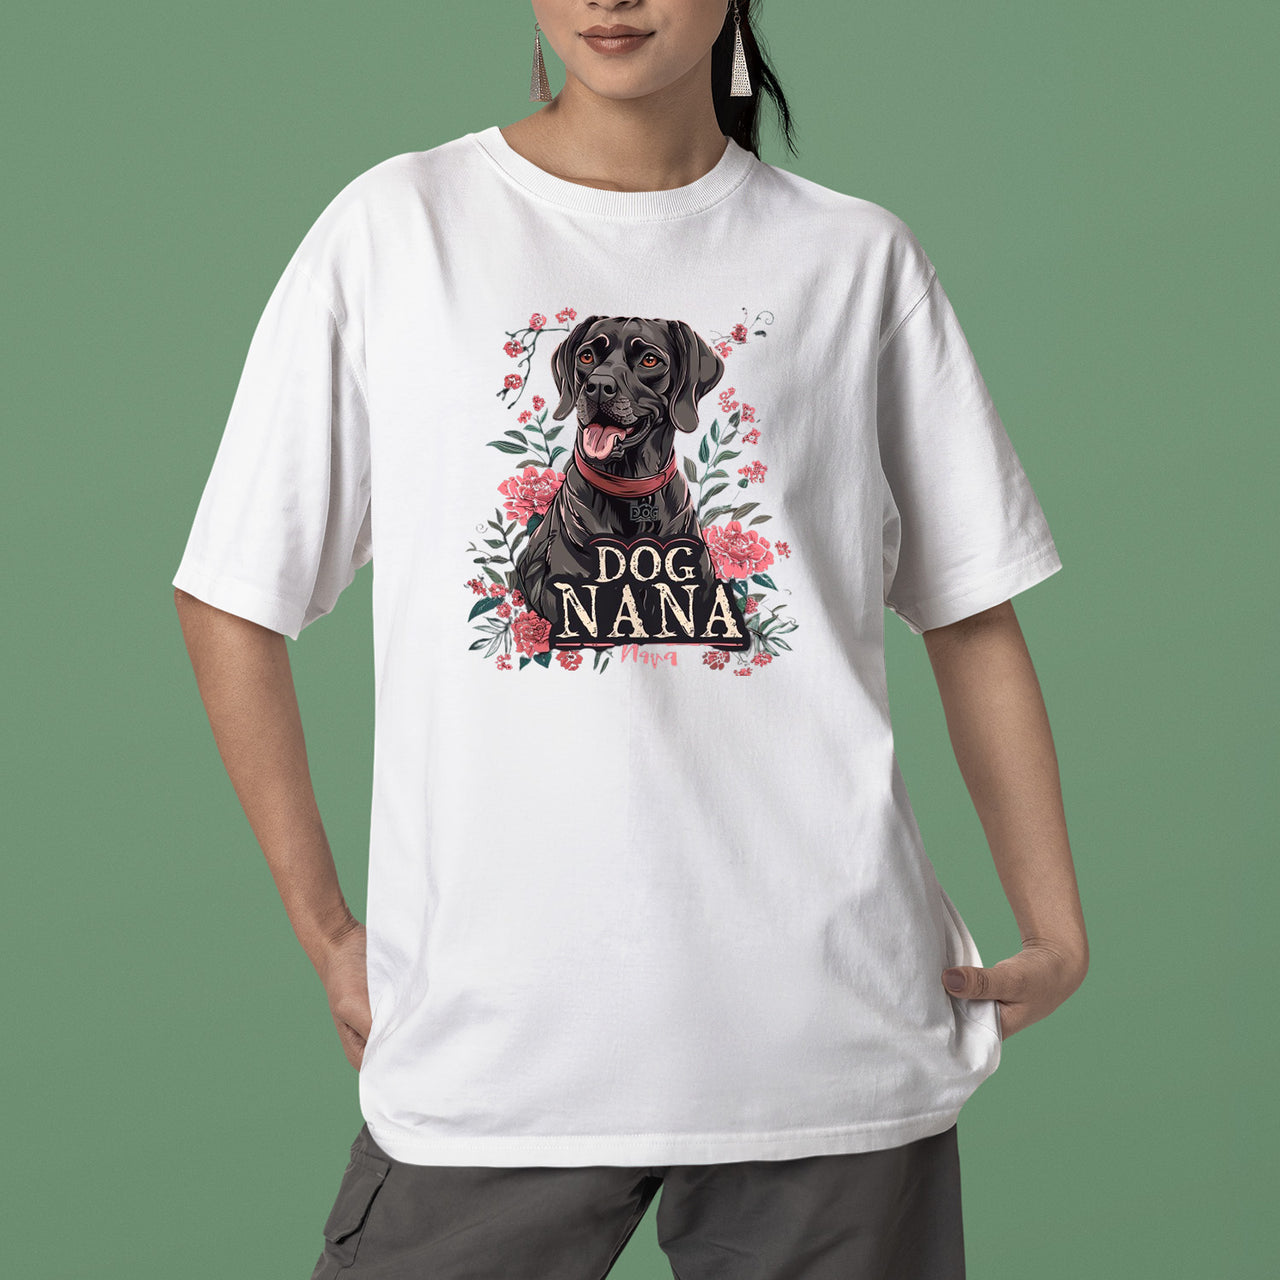 Labrador Retriever Dog T-shirt, Pet Lover Shirt, Dog Lover Shirt, Dog Nana T-Shirt, Dog Owner Shirt, Gift For Dog Grandma, Funny Dog Shirts, Women Dog T-Shirt, Mother's Day Gift, Dog Lover Wife Gifts, Dog Shirt